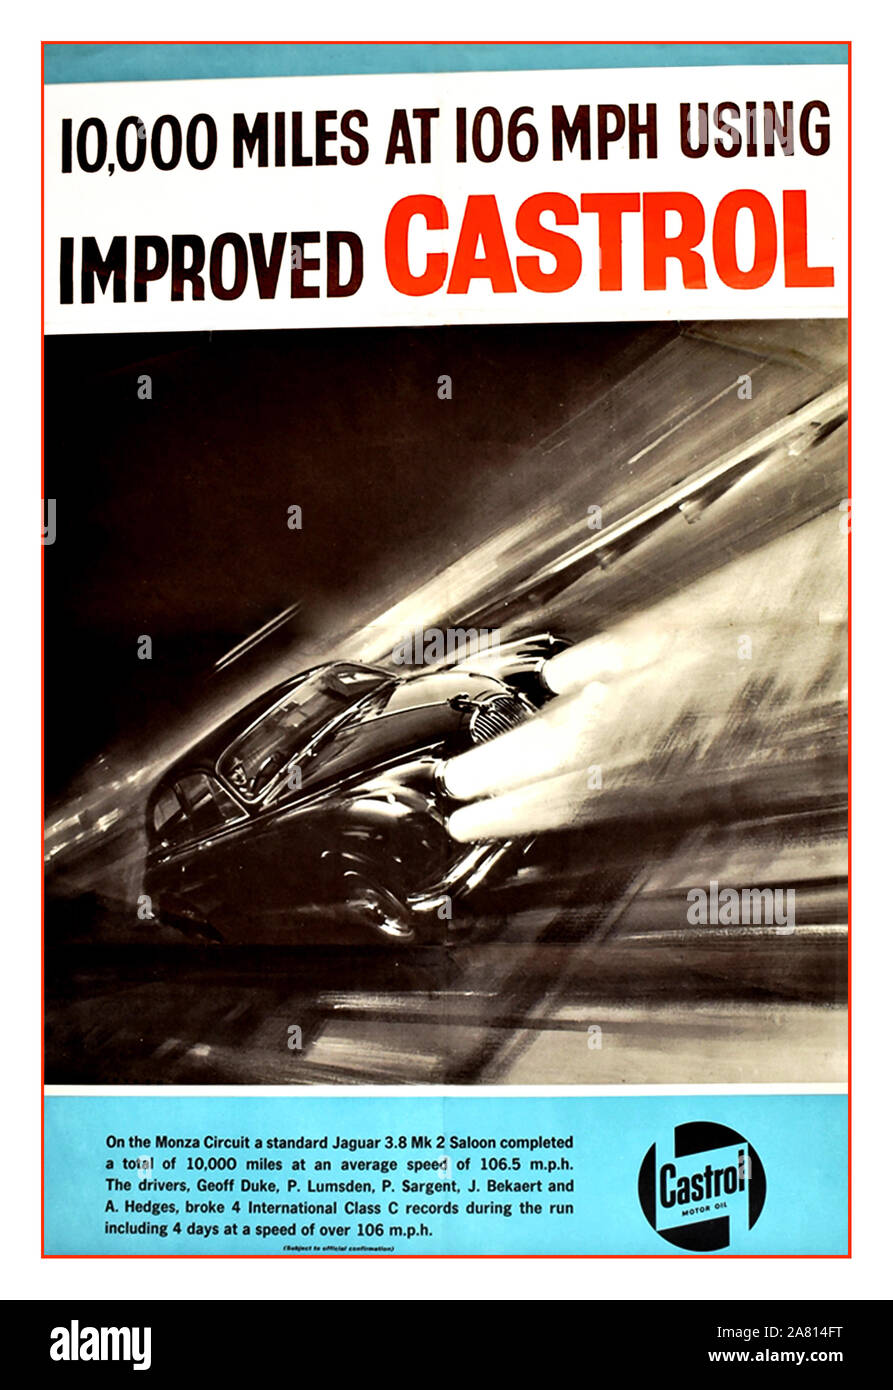 Vintage 1960 Poster con aceite Castrol berlinas Jaguar MK2 en la prueba de resistencia en Monza con aceite Castrol 10.000 millas a 106 mph utilizando mejores CASTROL CASTROL cartel" - Marzo de 1963 Foto de stock